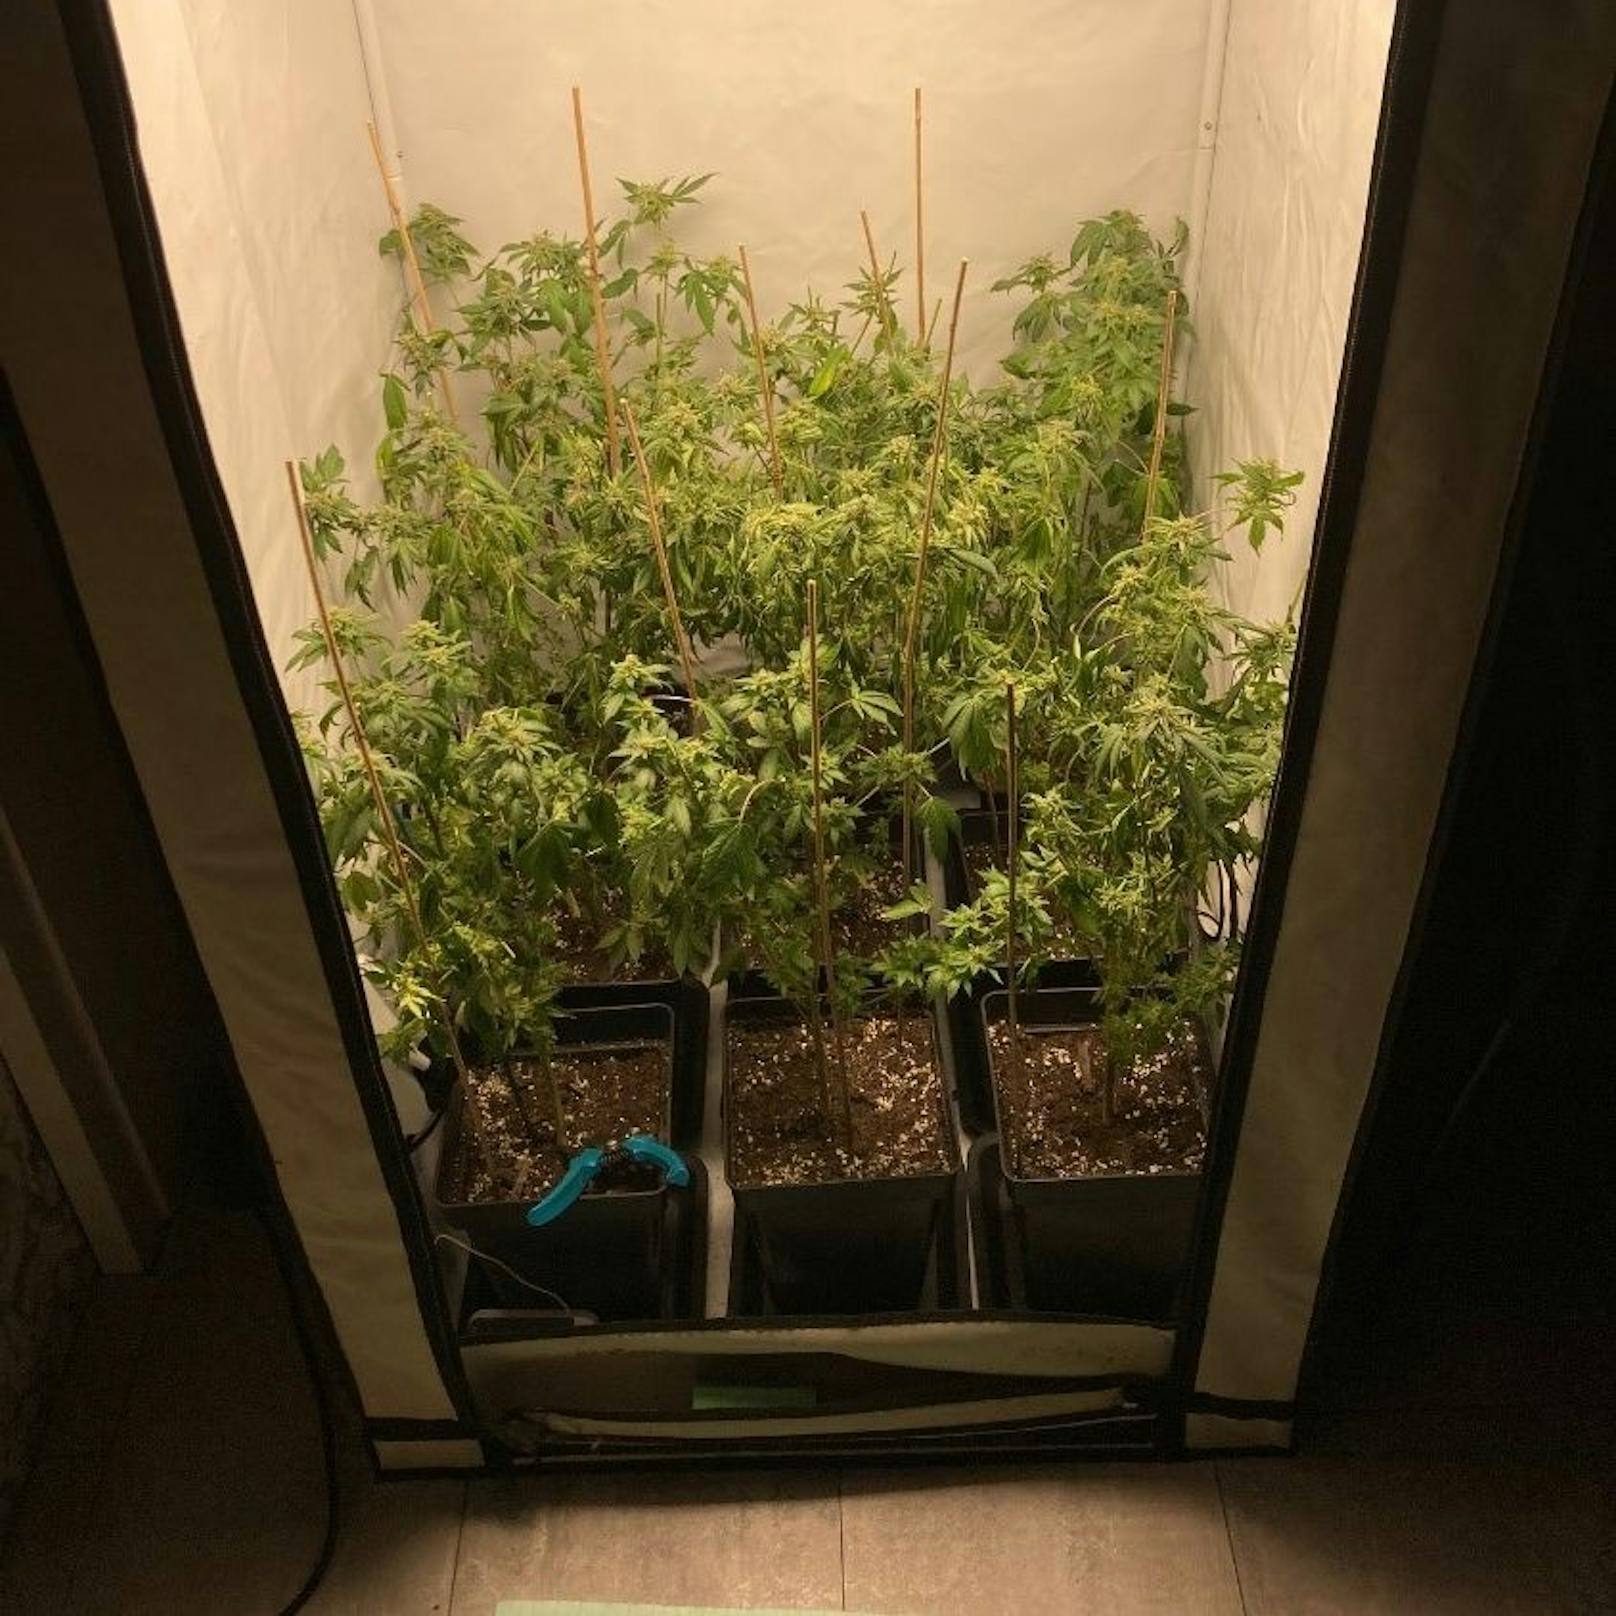 Diese Cannabispflanzen wurden sichergestellt.